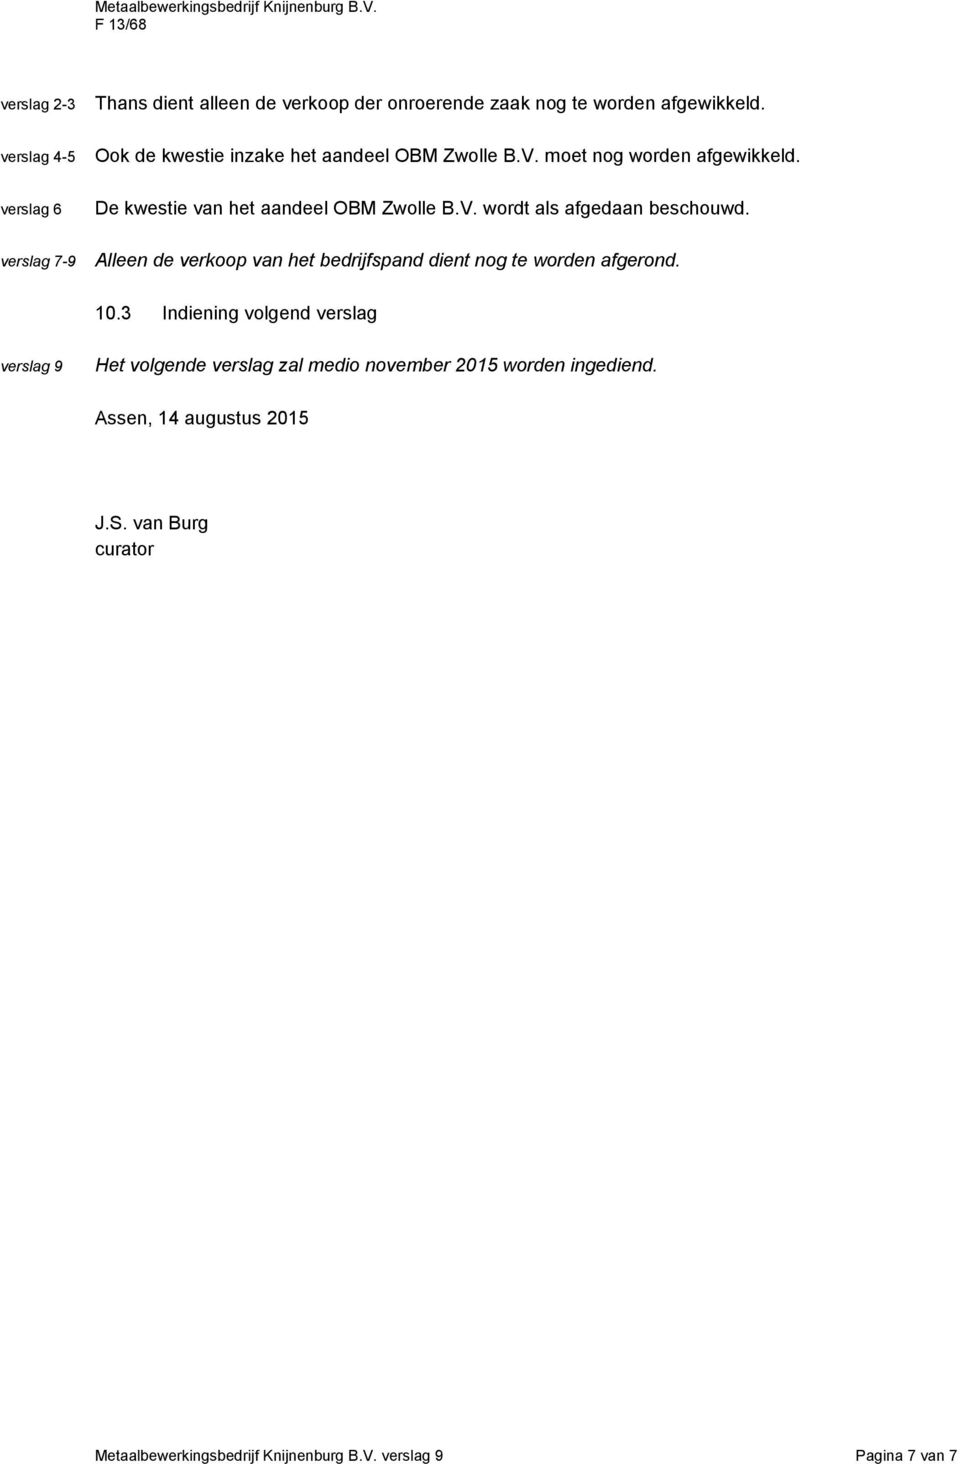 verslag 6 De kwestie van het aandeel OBM Zwolle B.V. wordt als afgedaan beschouwd.